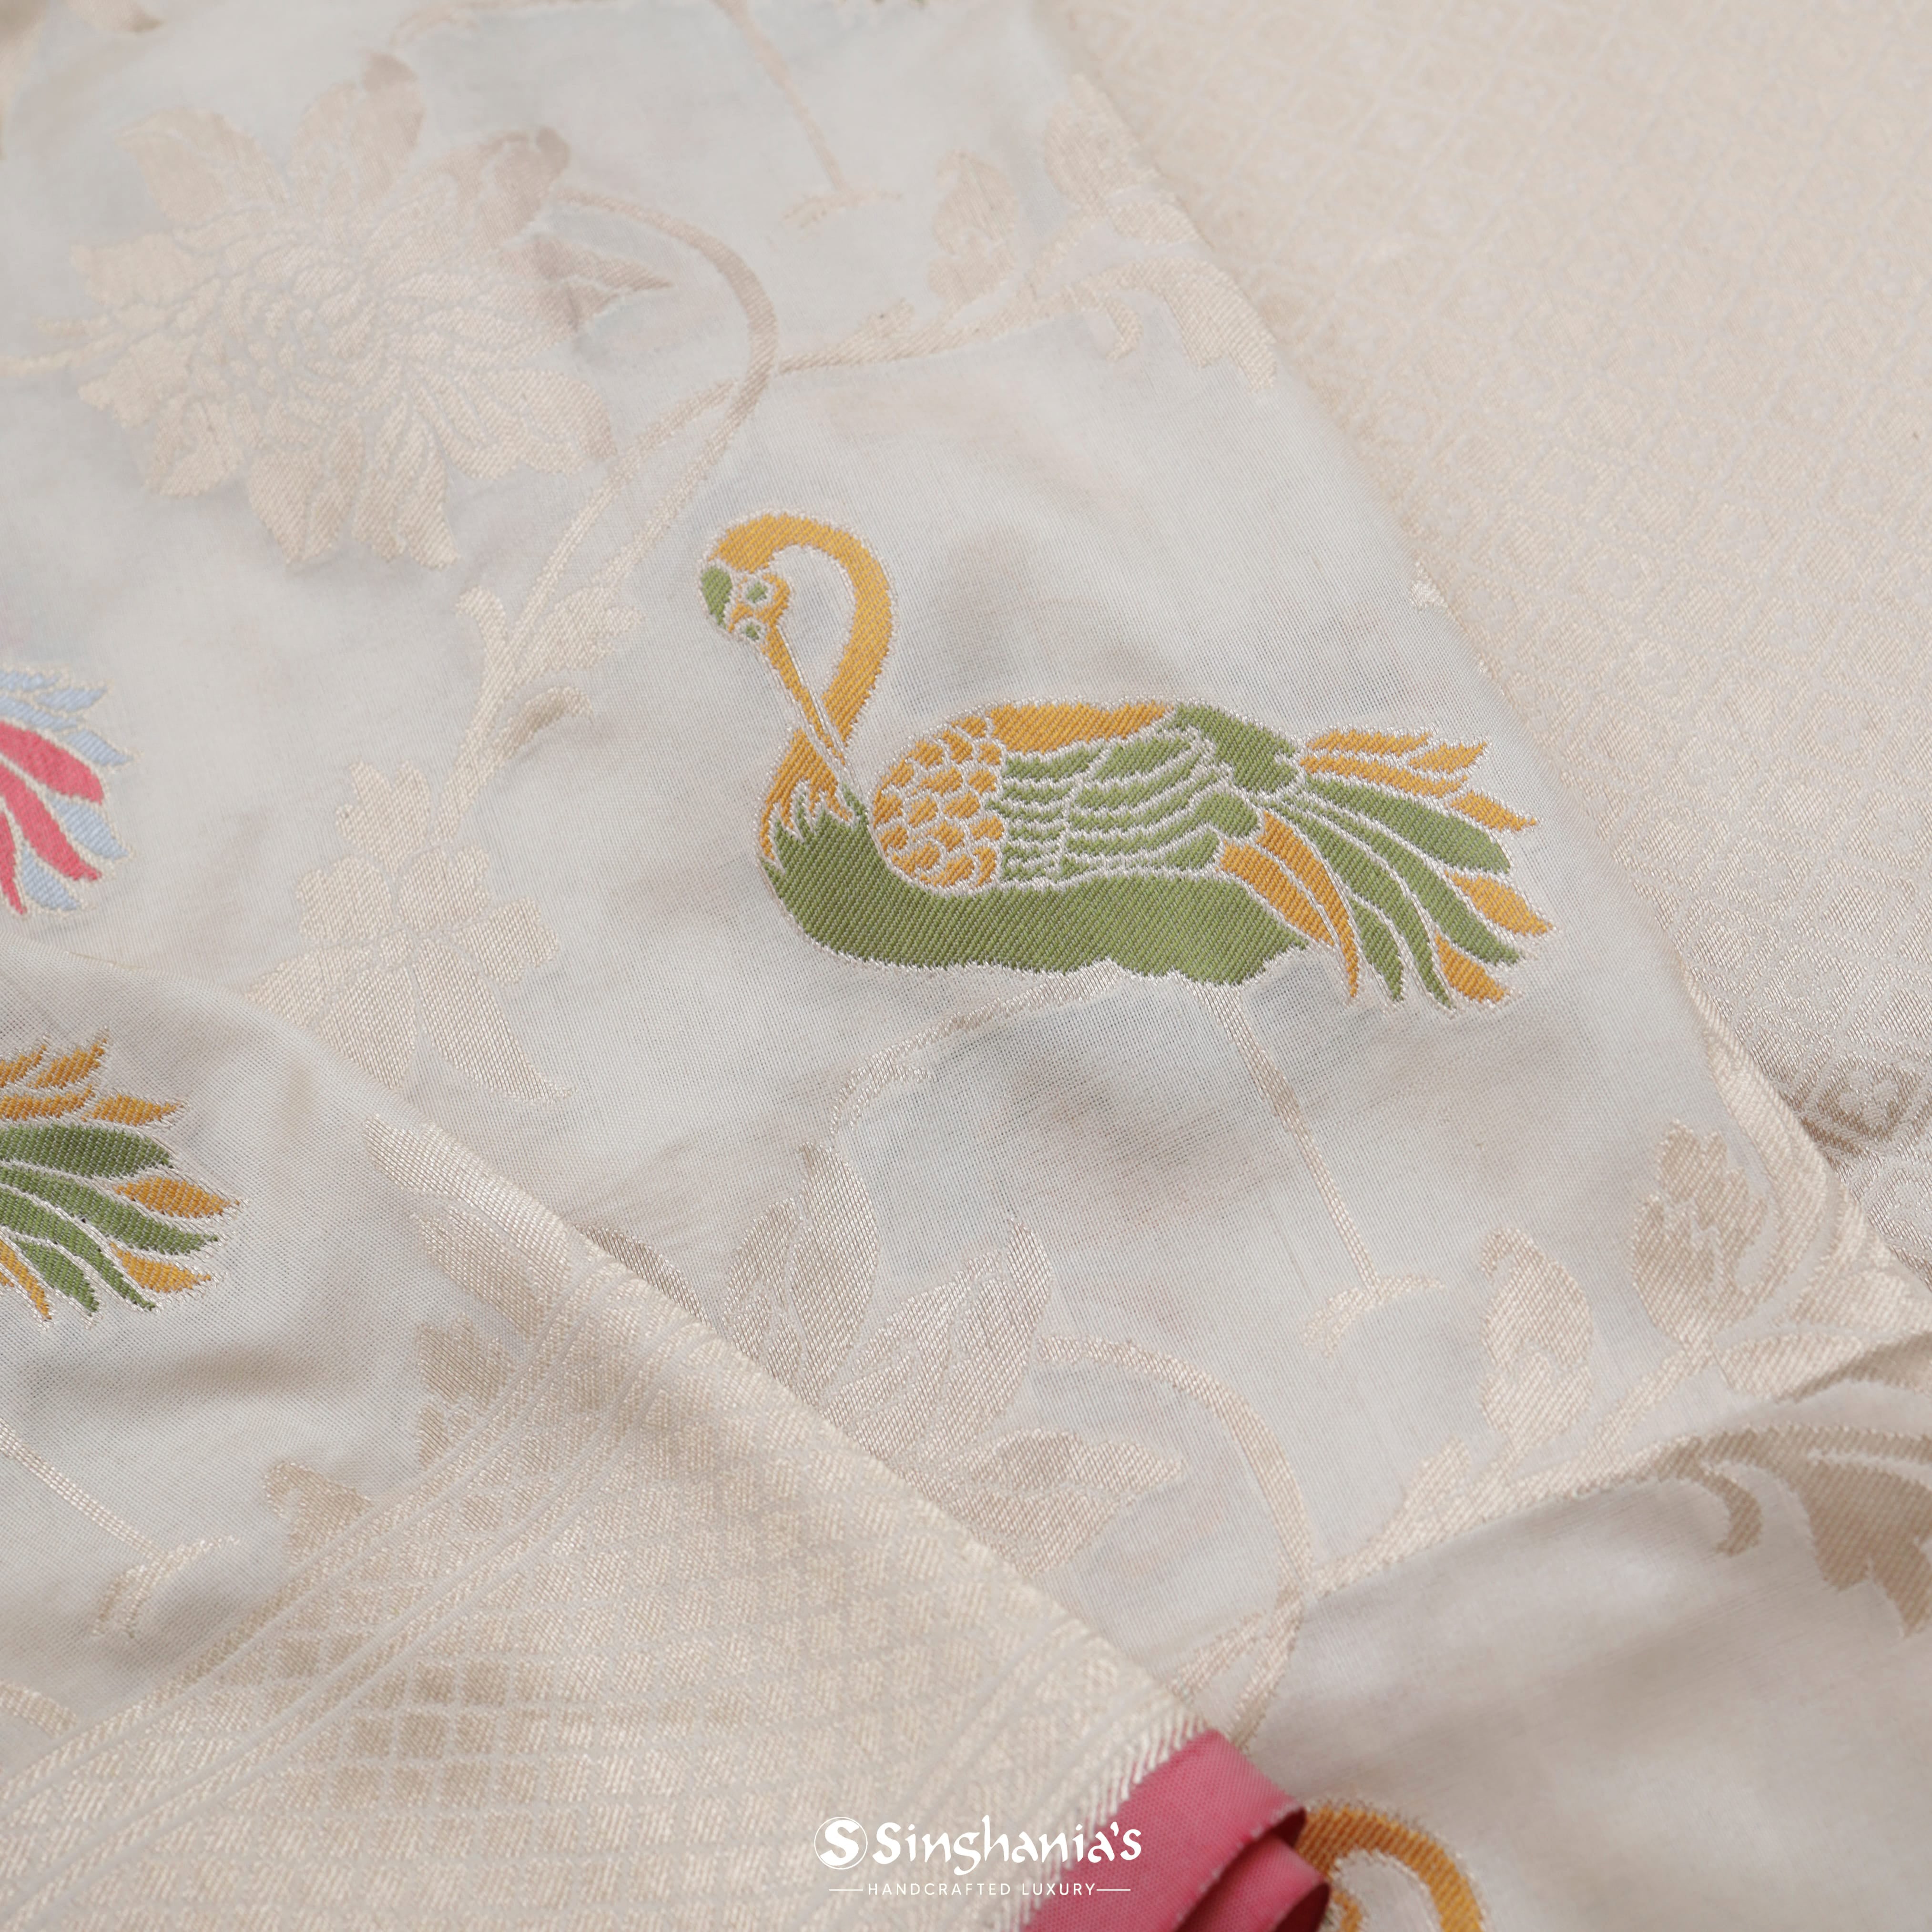 Pearl White Silk Banarasi Saree With Nature Inspired Birds Motif Pattern